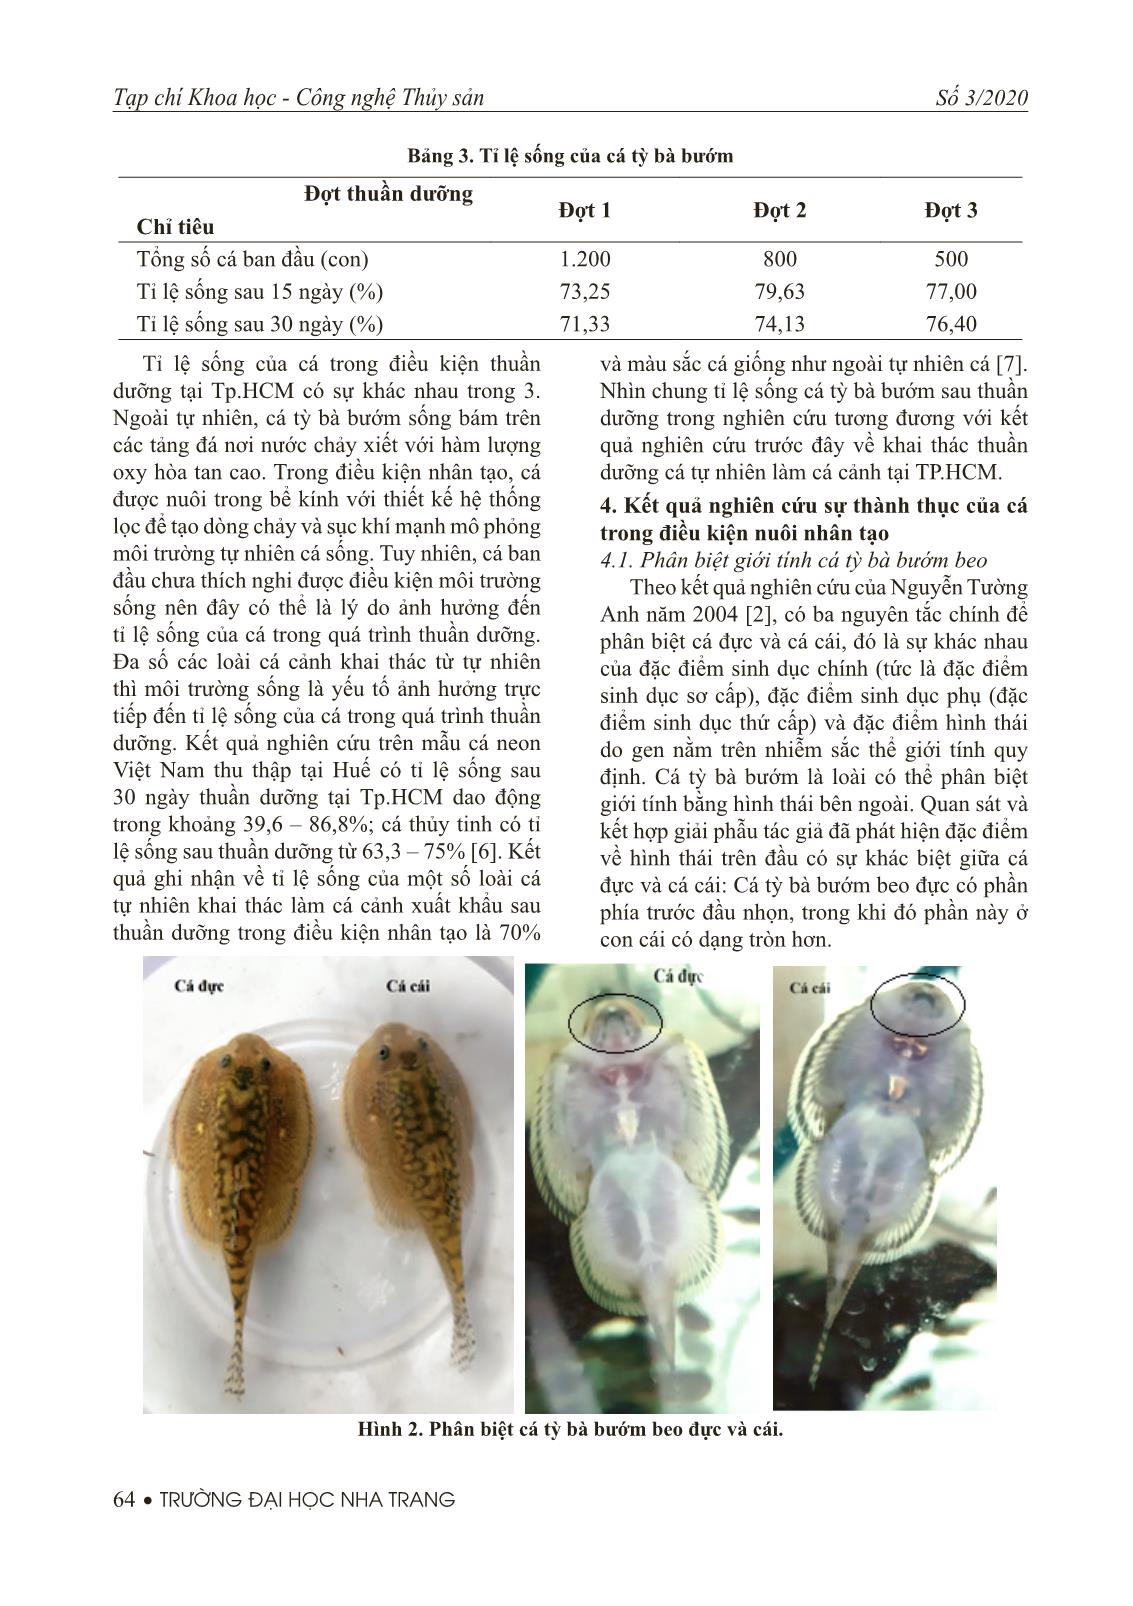 Khảo sát và theo dõi sự phát triển tuyến sinh dục của cá tỳ bà bướm beo (Sewellia elongate Roberts, 1998) trong điều kiện nuôi nhân tạo trang 5